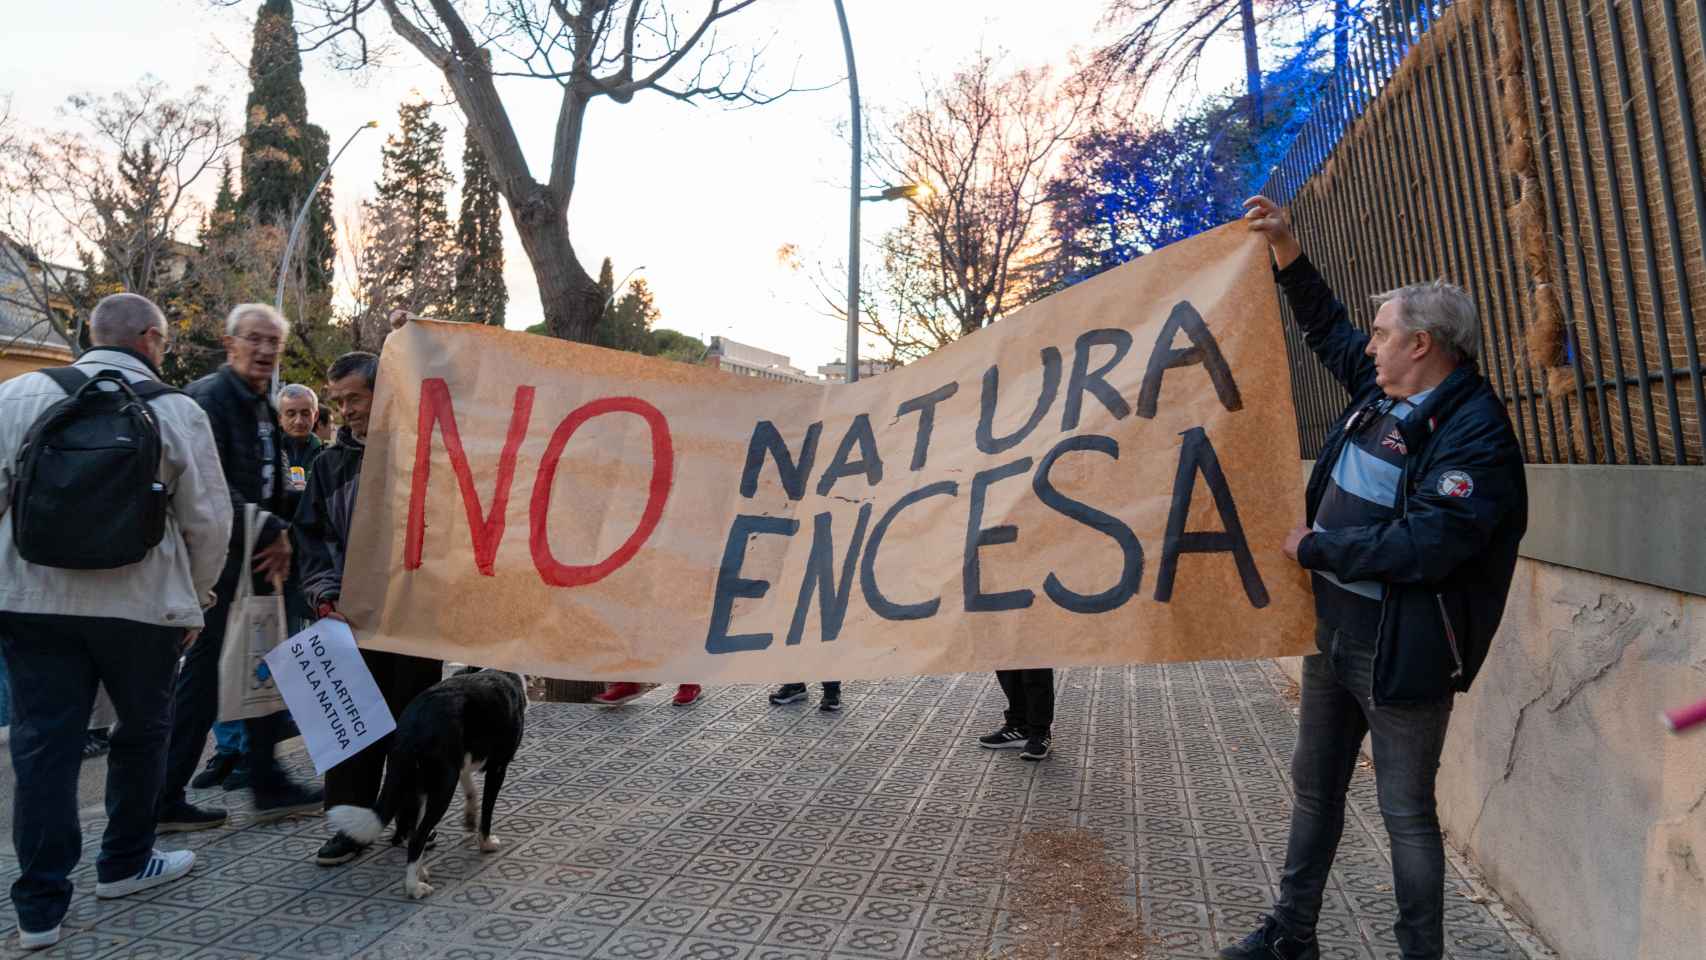 Manifestantes contra 'Natura Encesa'